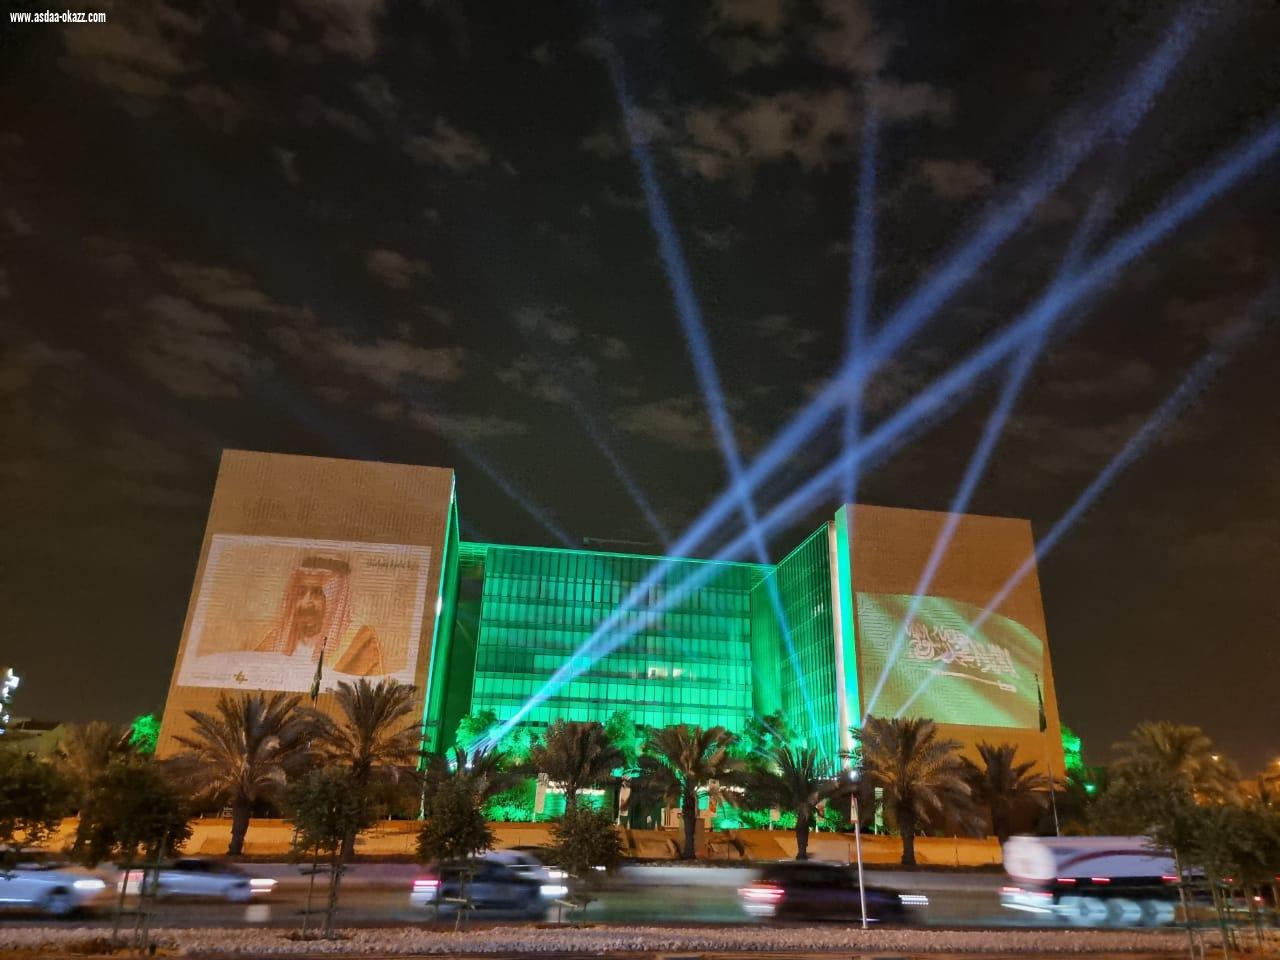  مركز الملك عبدالعزيز للحوار الوطني يمكن زوار واجهة الرياض لقياس الحوار لديهم ويقدم الارشادات لتفعيل الحوار الإيجابي 